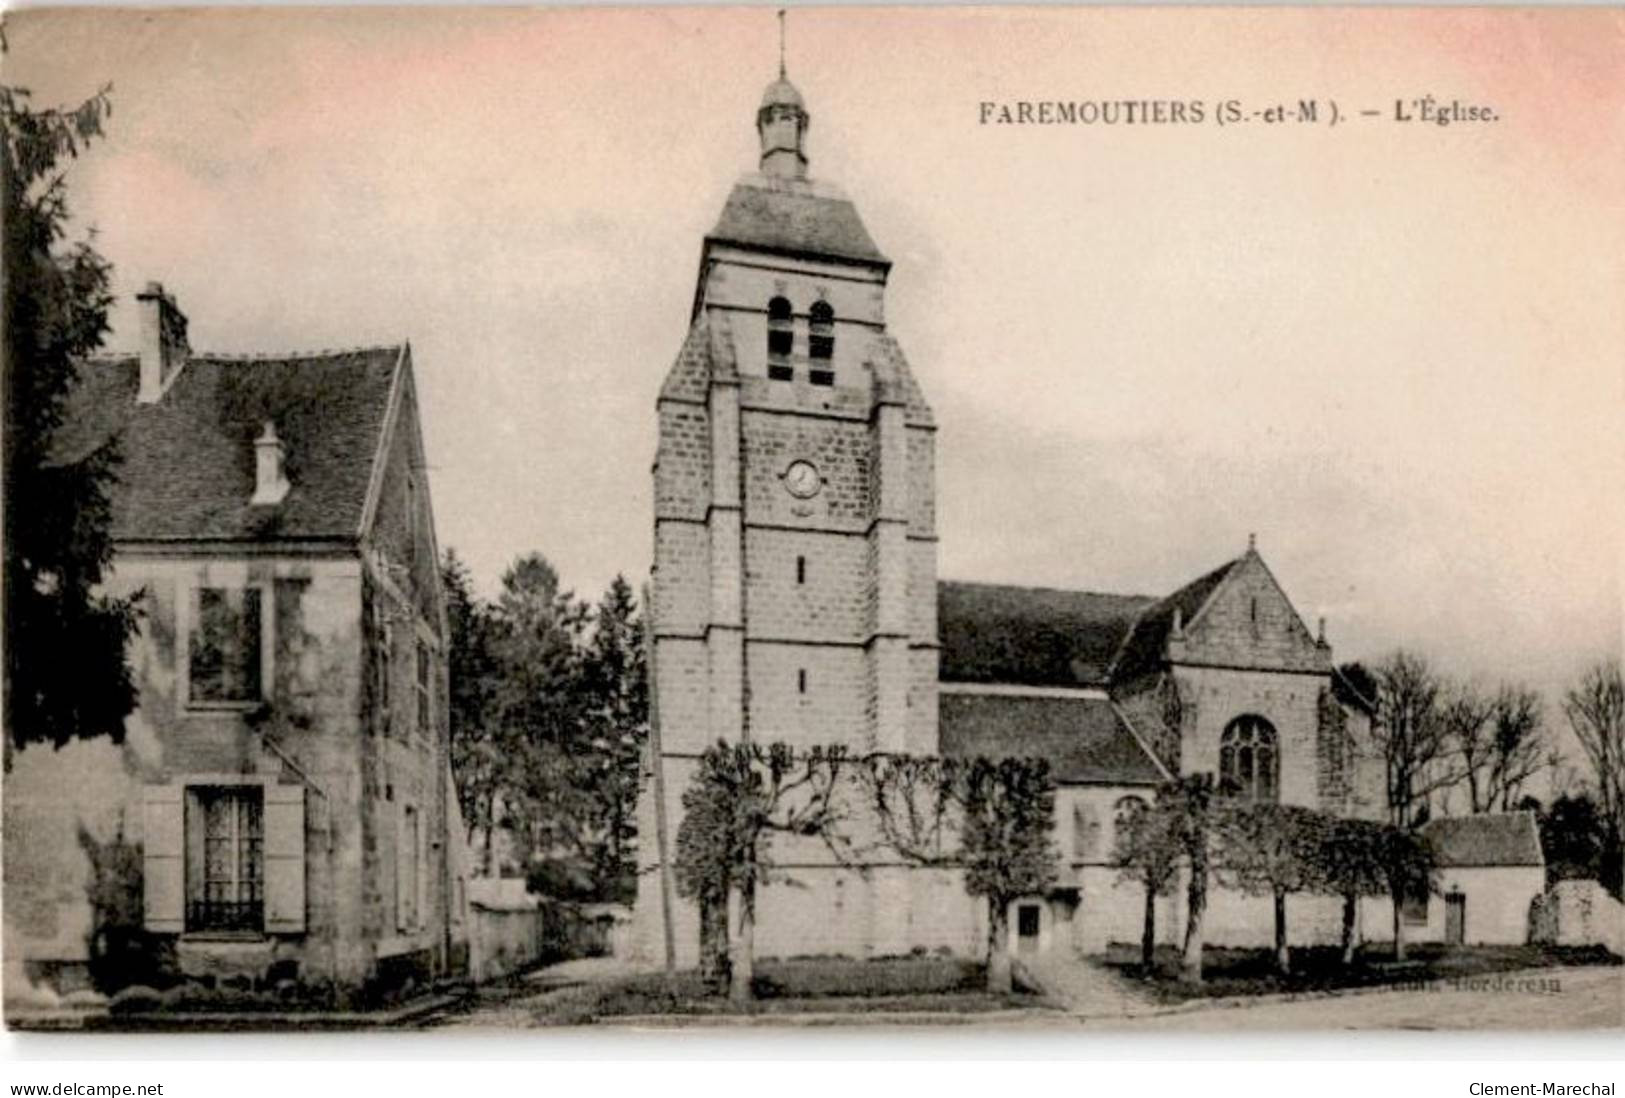 FAREMOUTIERS: L'église - état - Faremoutiers